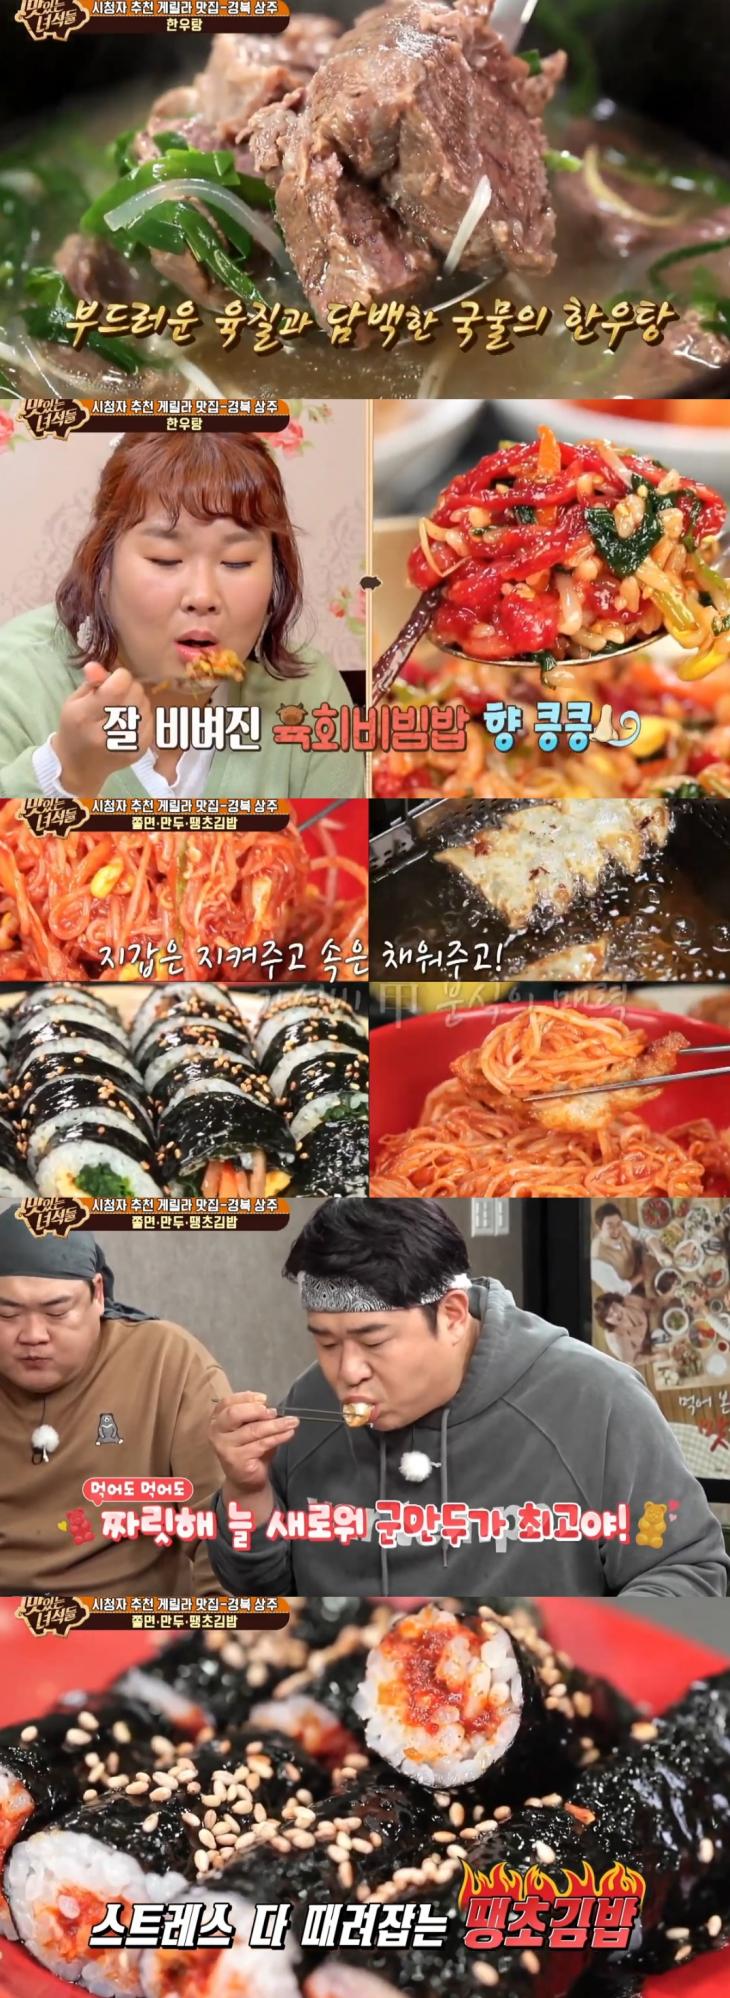 [종합] '맛있는녀석들' 경북 상주 시청자 맛집, 한우탕-쫄면·만두·땡초김밥